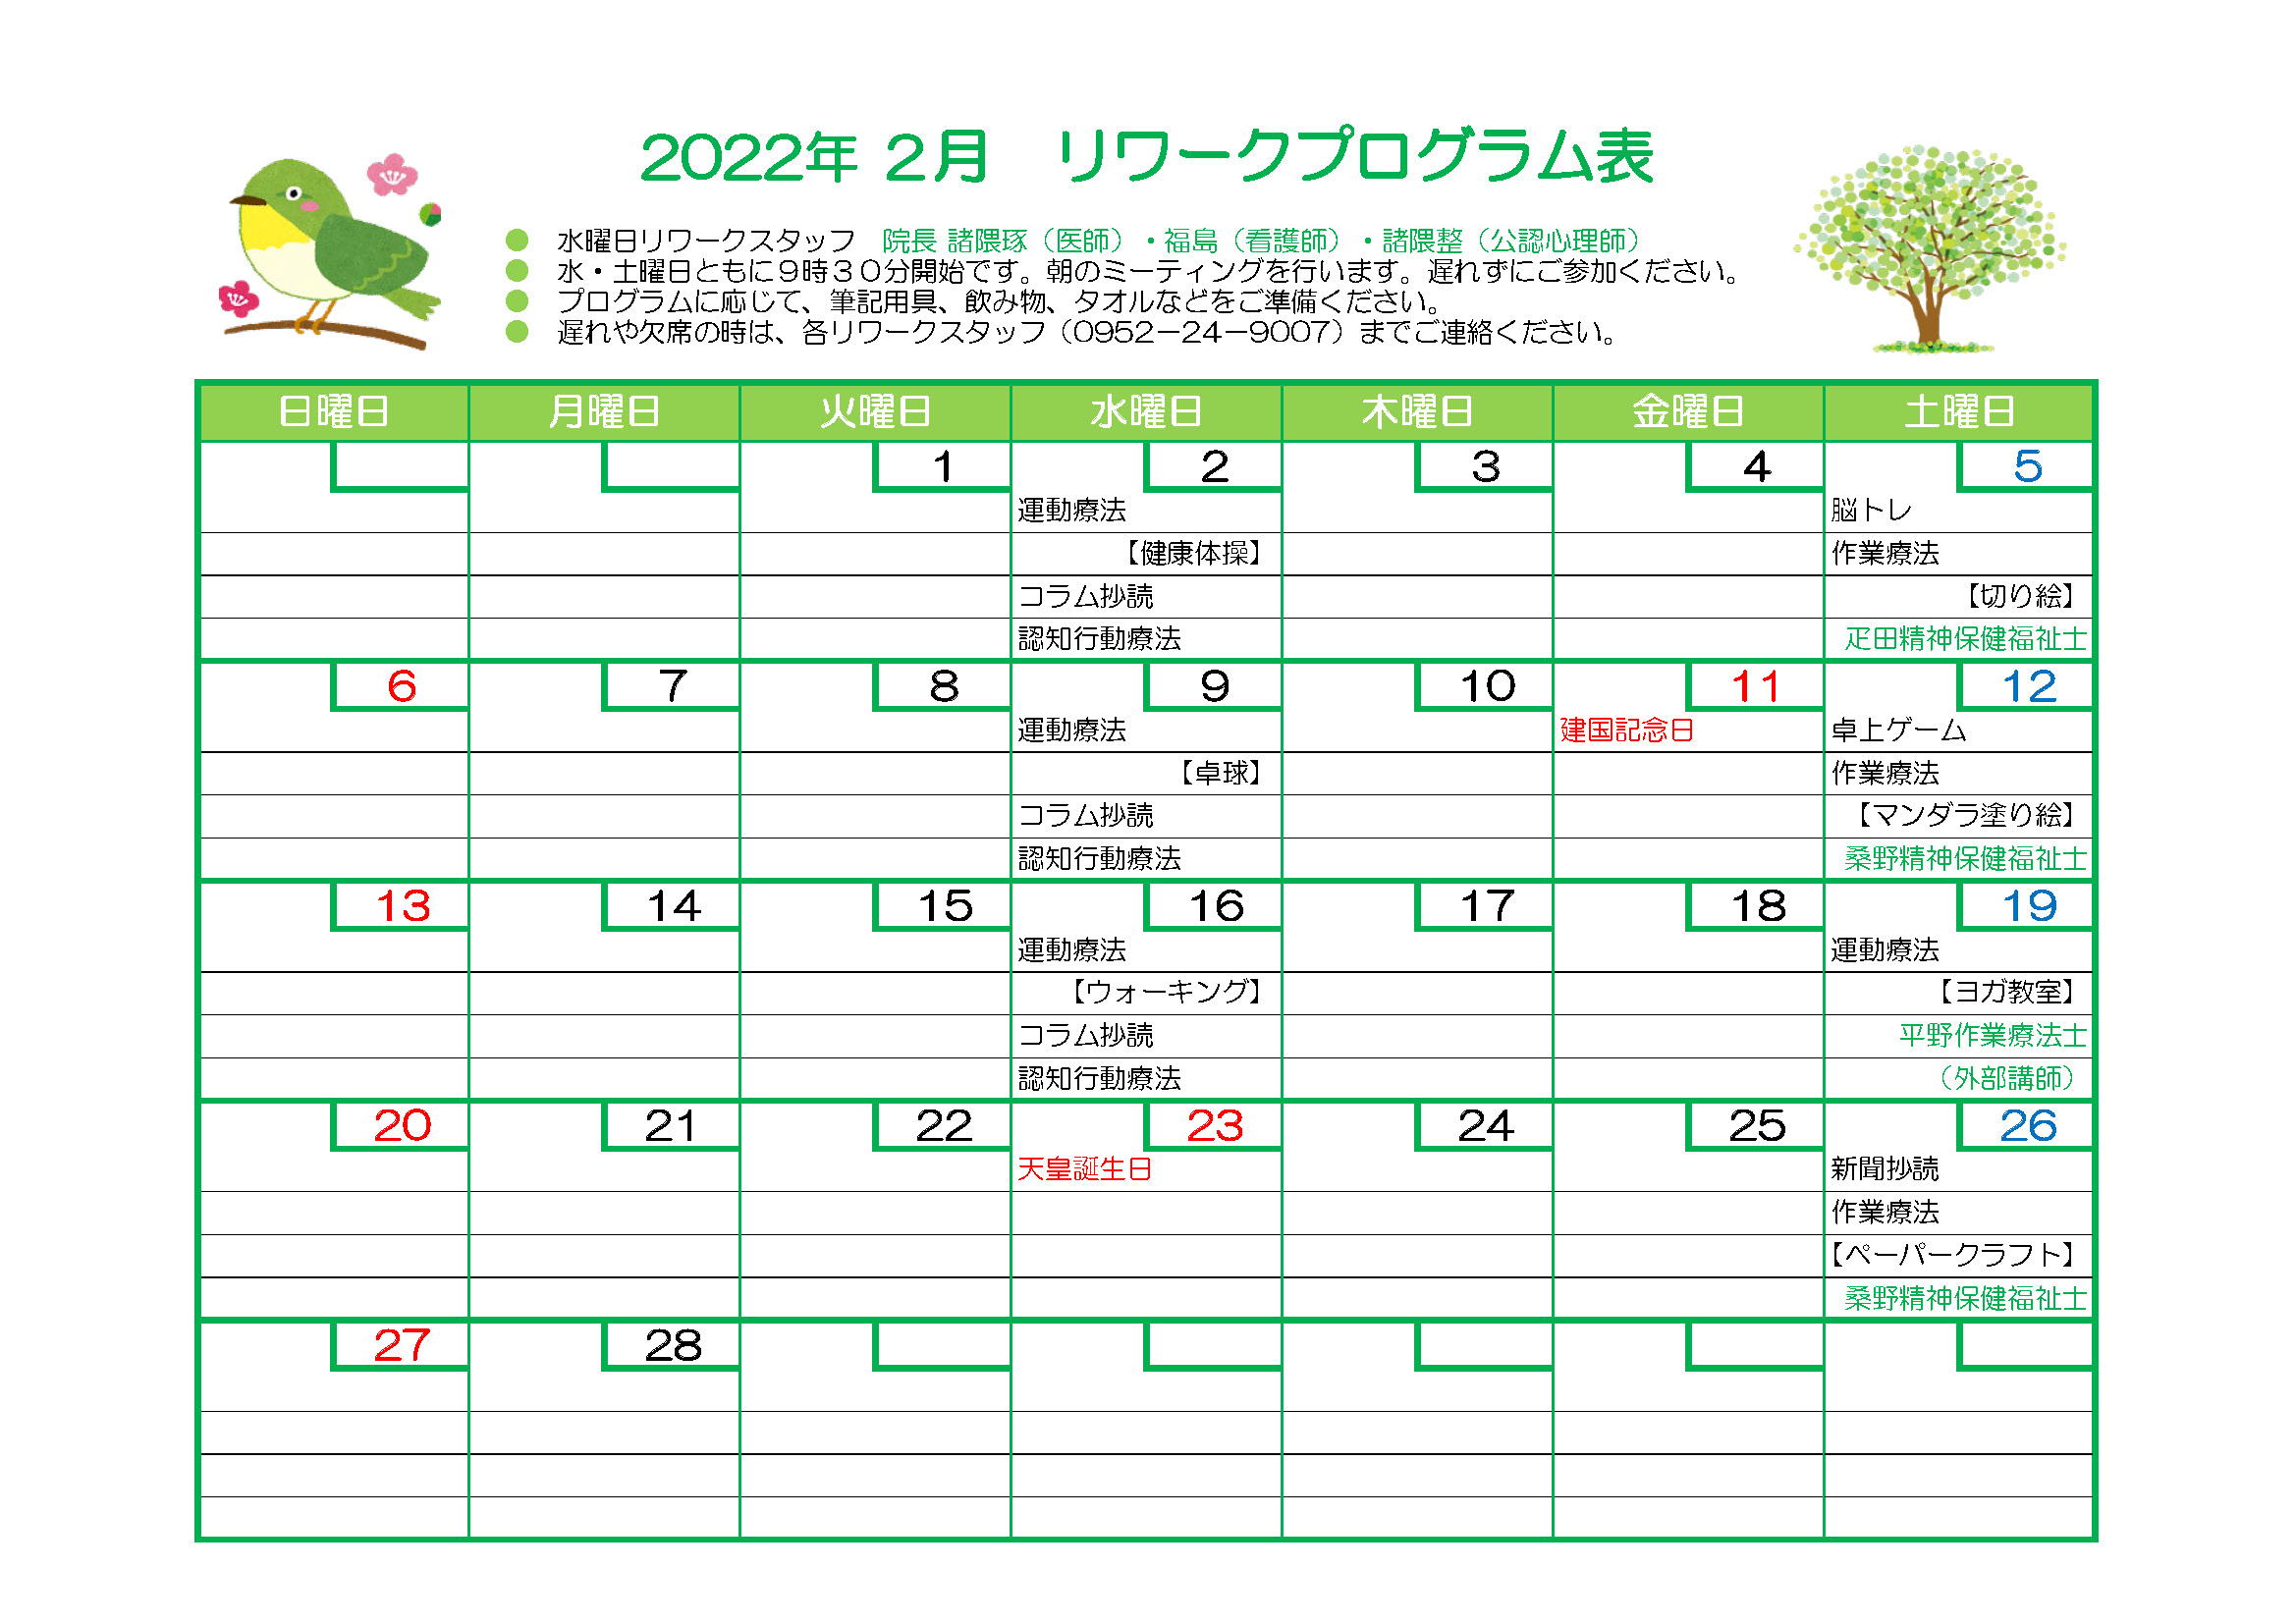 2022年2月リワークプログラム表